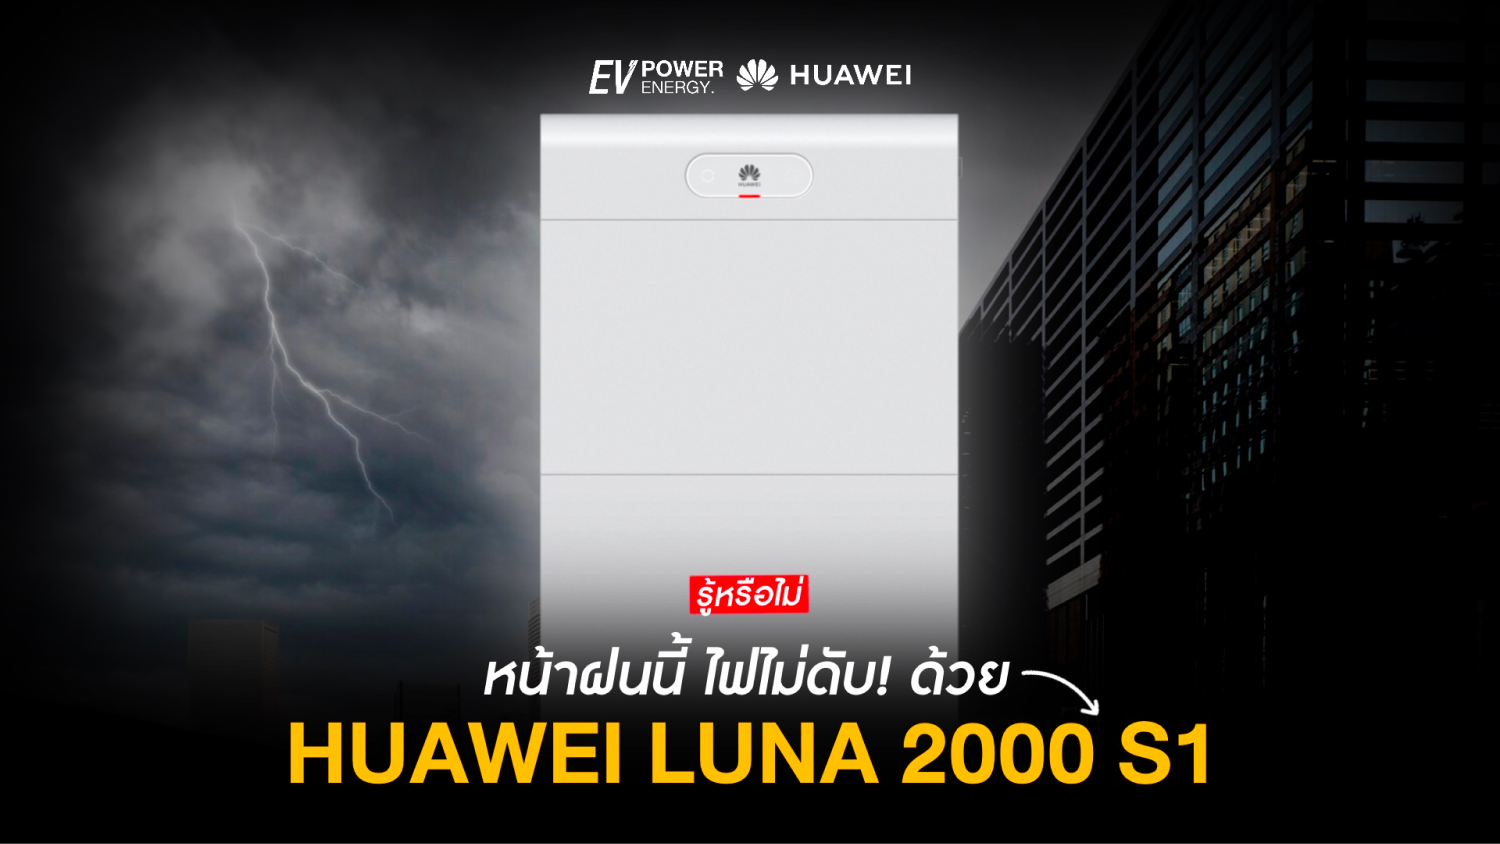 หน้าฝนนี้ ไฟไม่ดับ! ด้วย Huawei LUNA 2000 S1